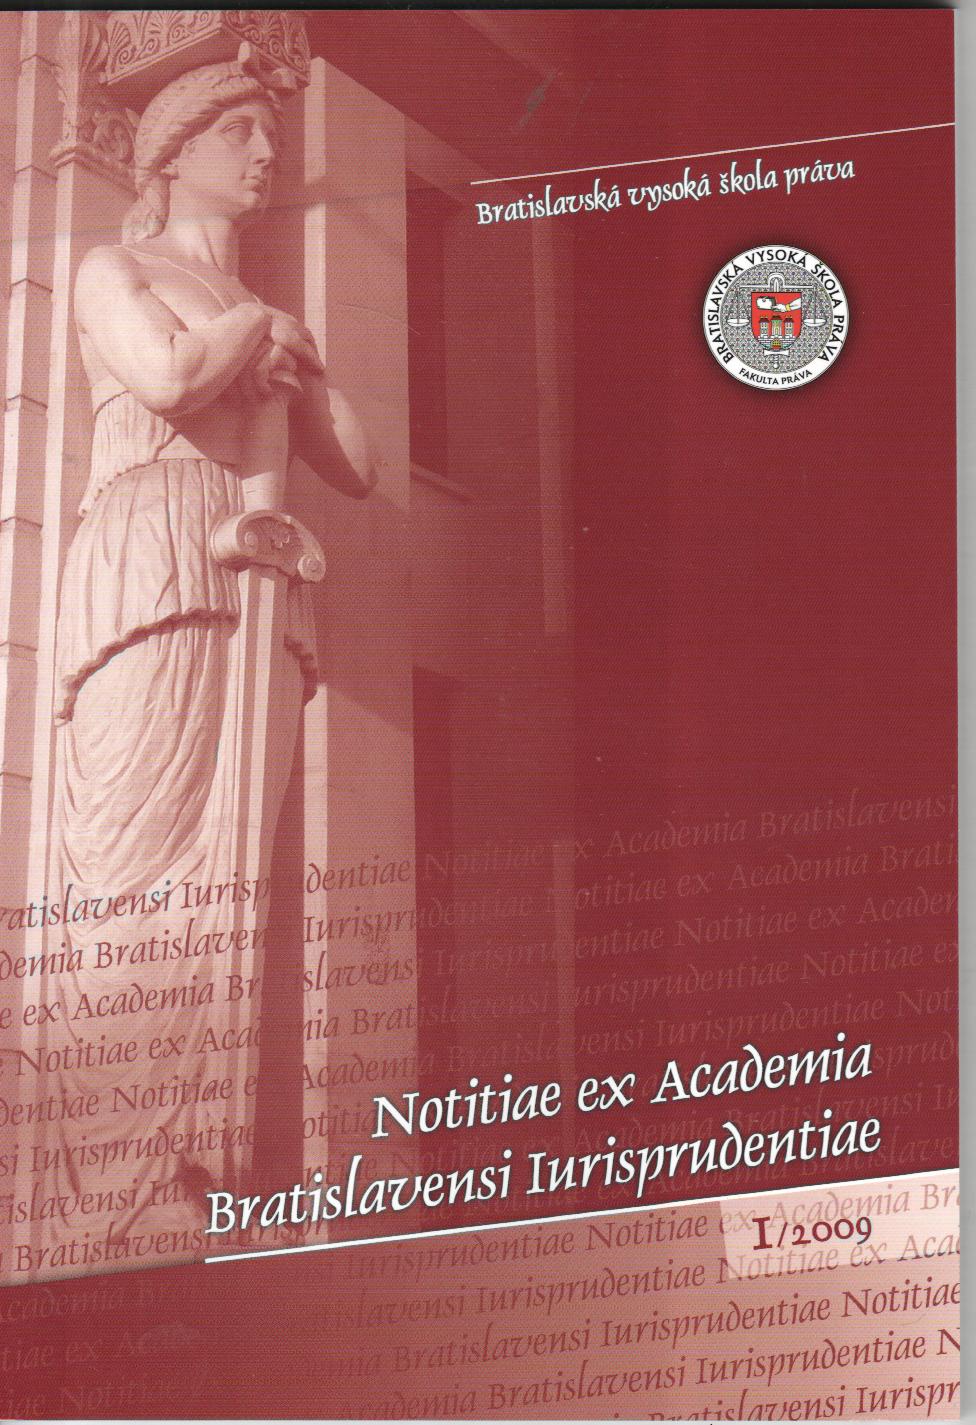 1/2009 Notitiae ex Academia Bratislavensi Iurisprudentiae